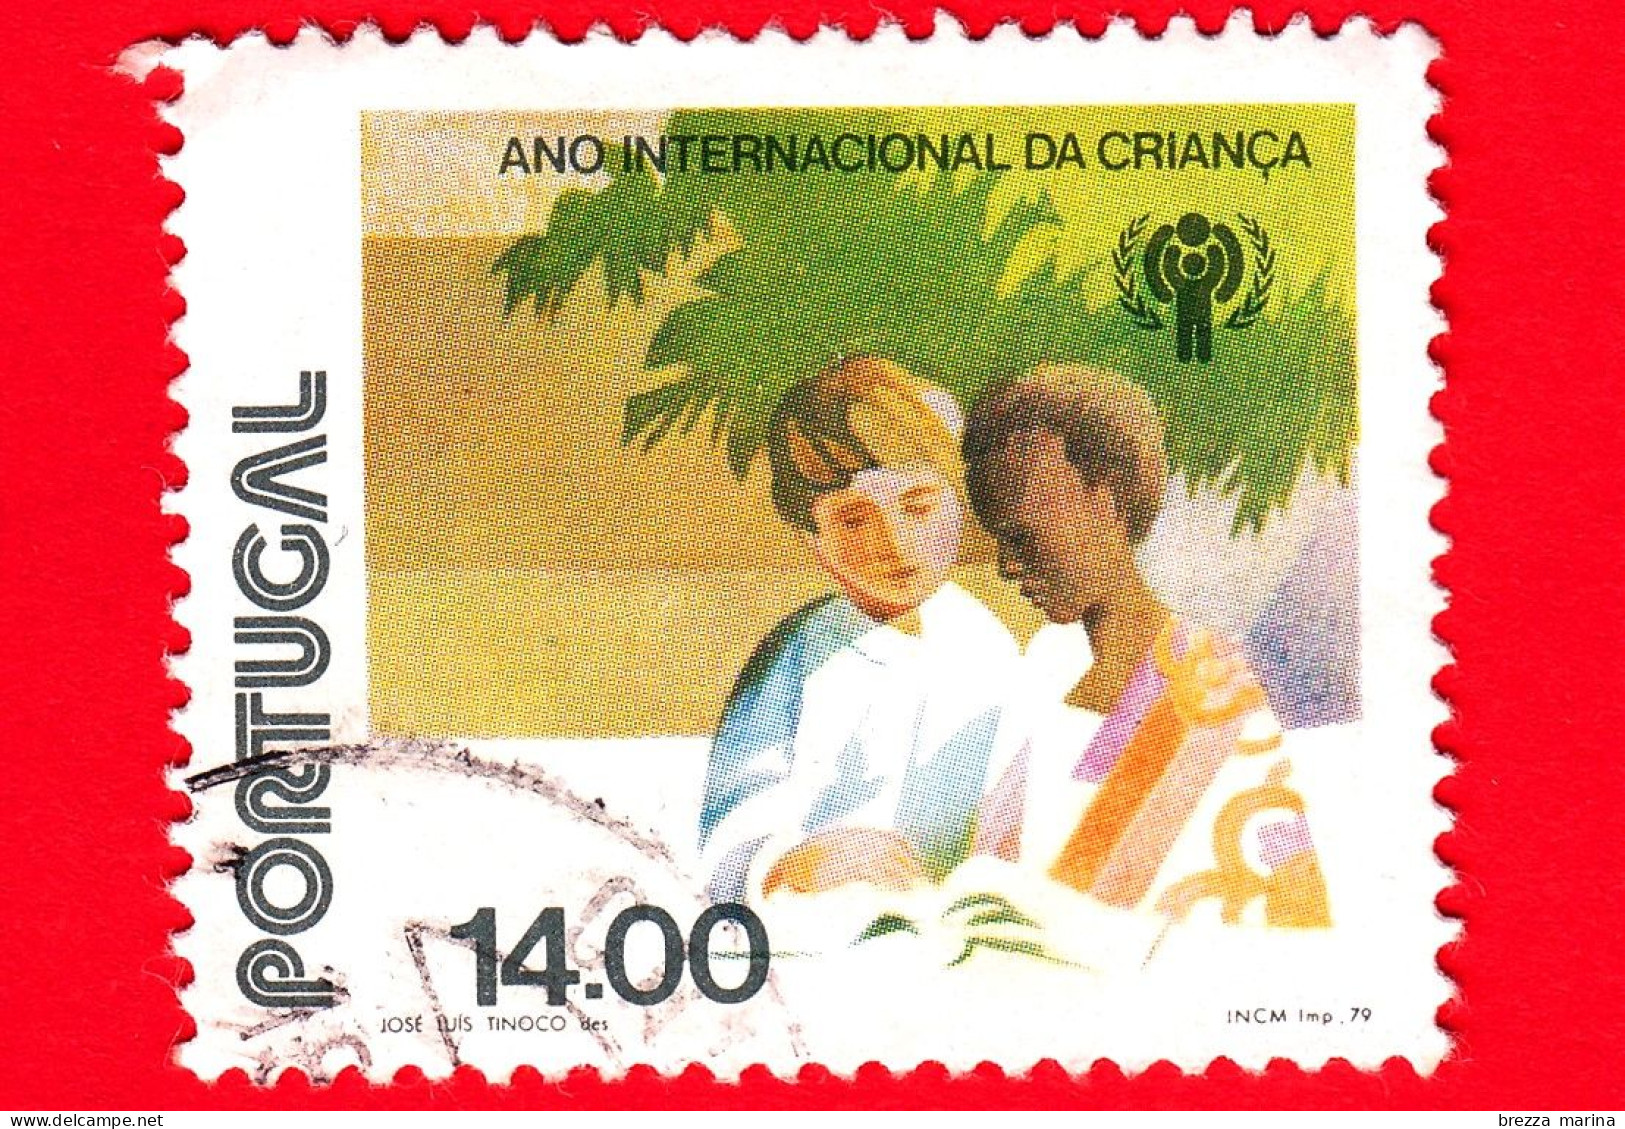 PORTOGALLO - Usato - 1979 - Anno Internazionale Dei Bambini - Ragazzo Bianco E Ragazzo Nero - 14.00 - Usati